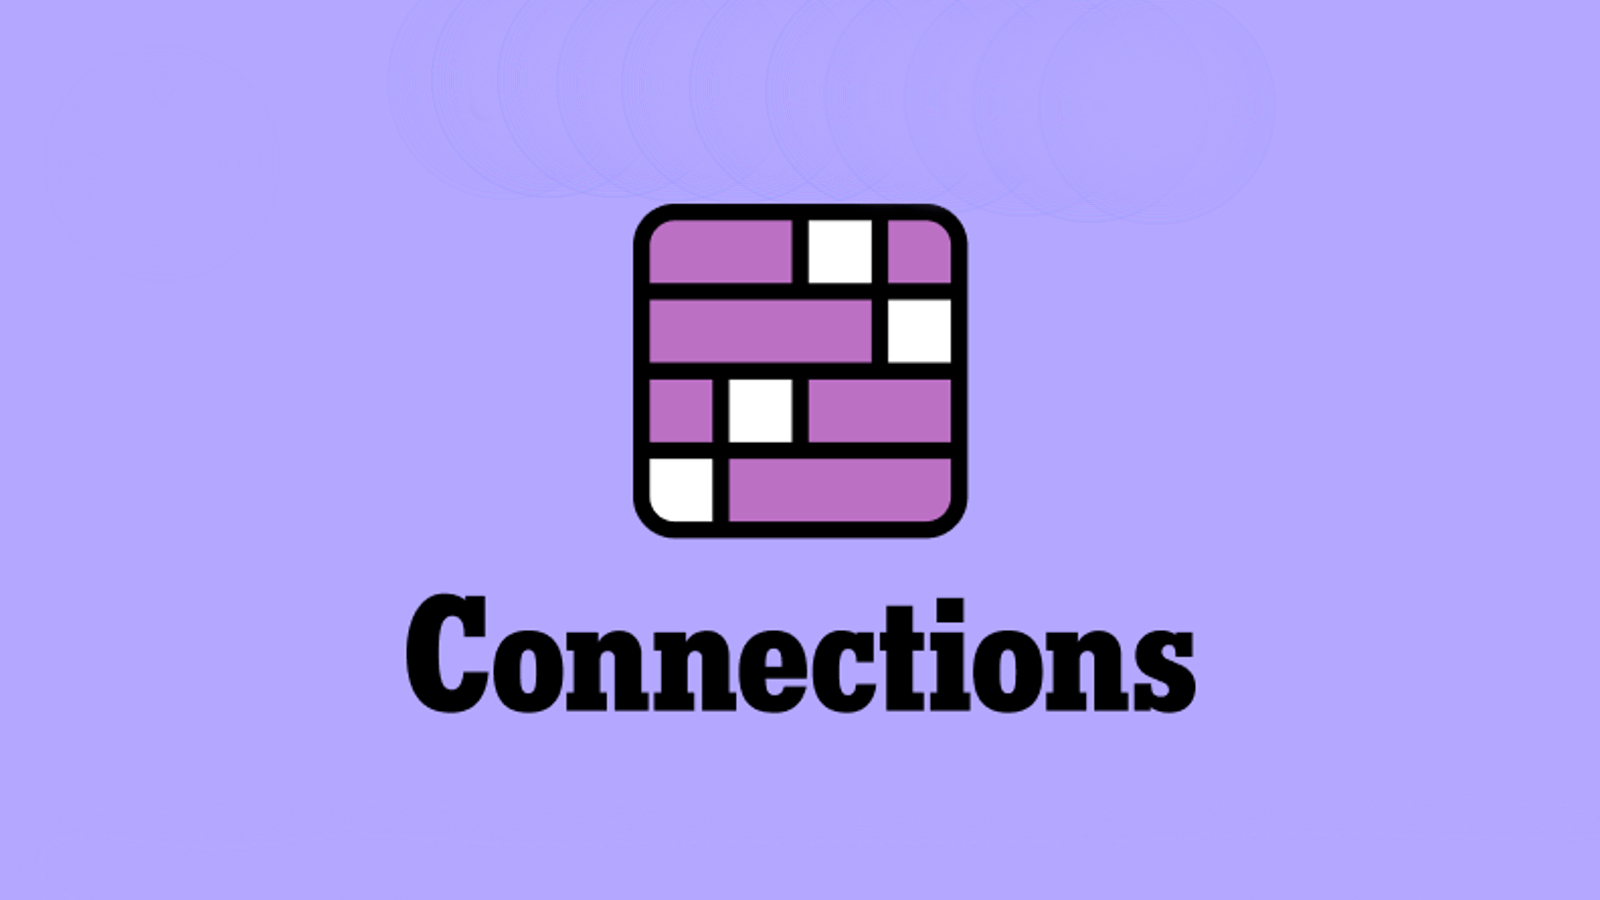 Logotipo do jogo New York Times Connection.